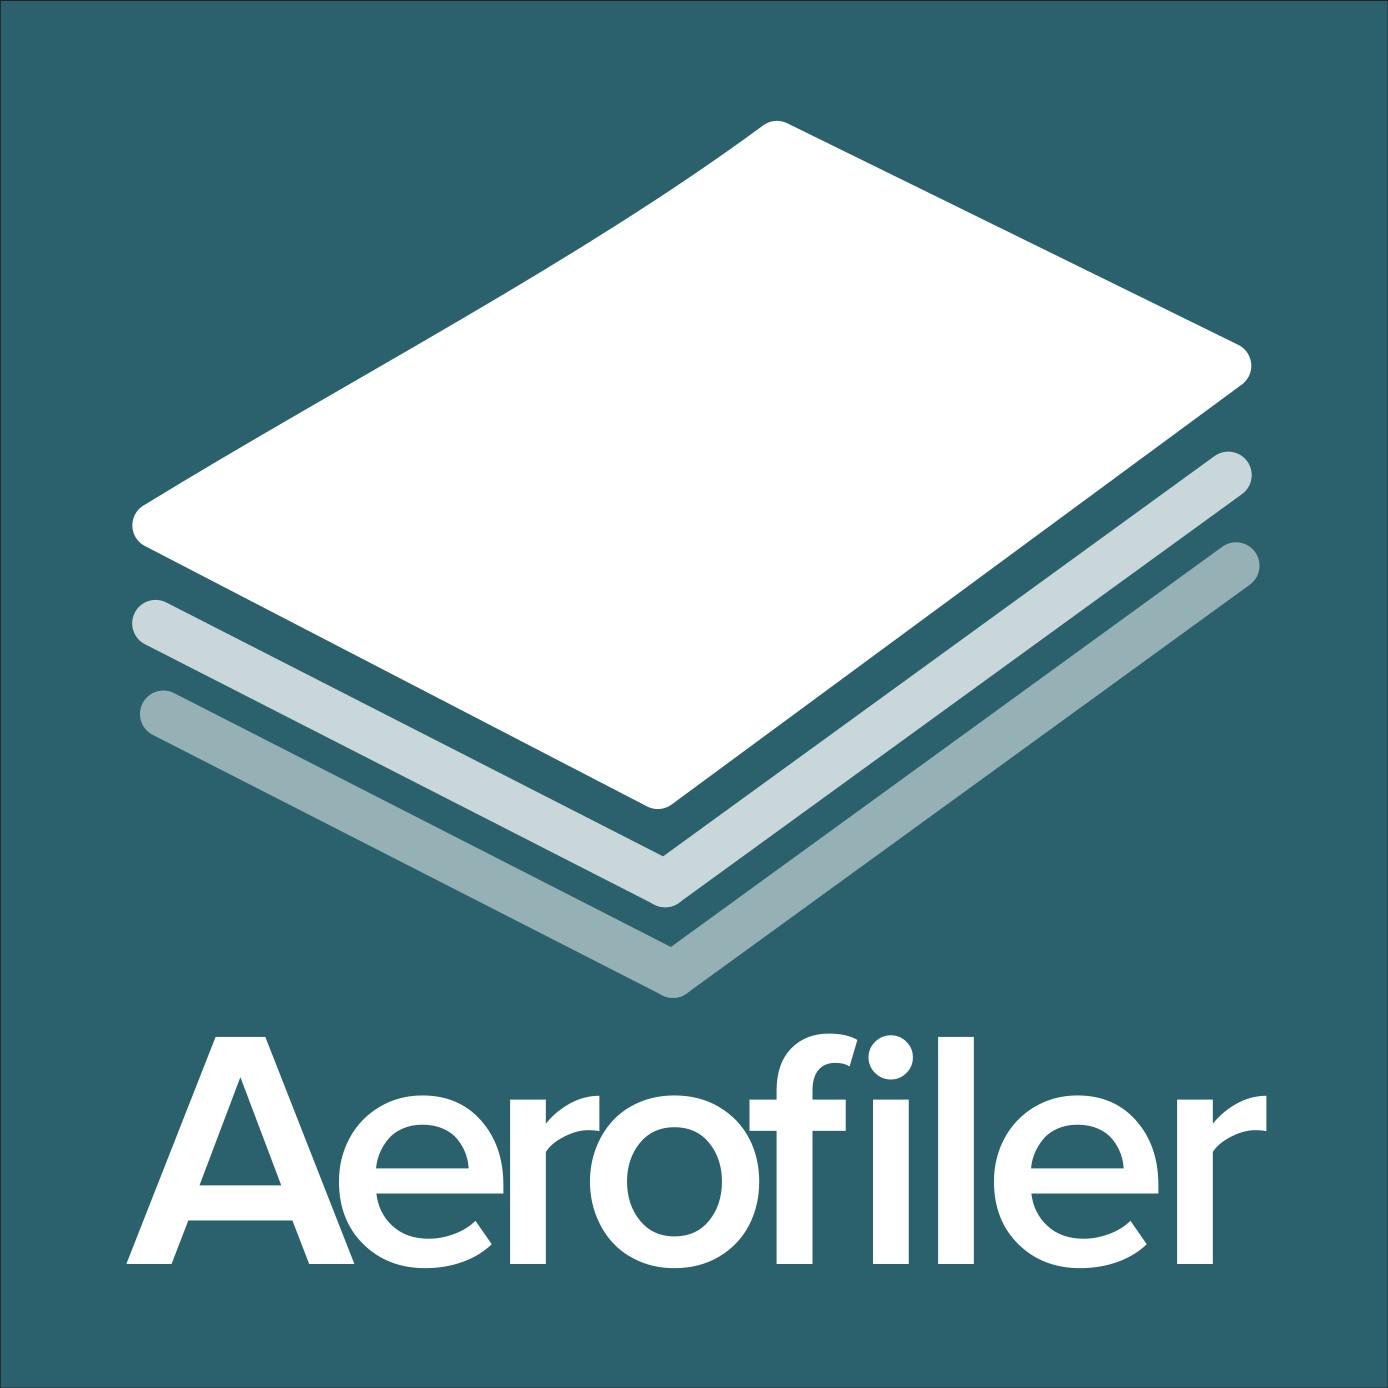 Aerofiler logo